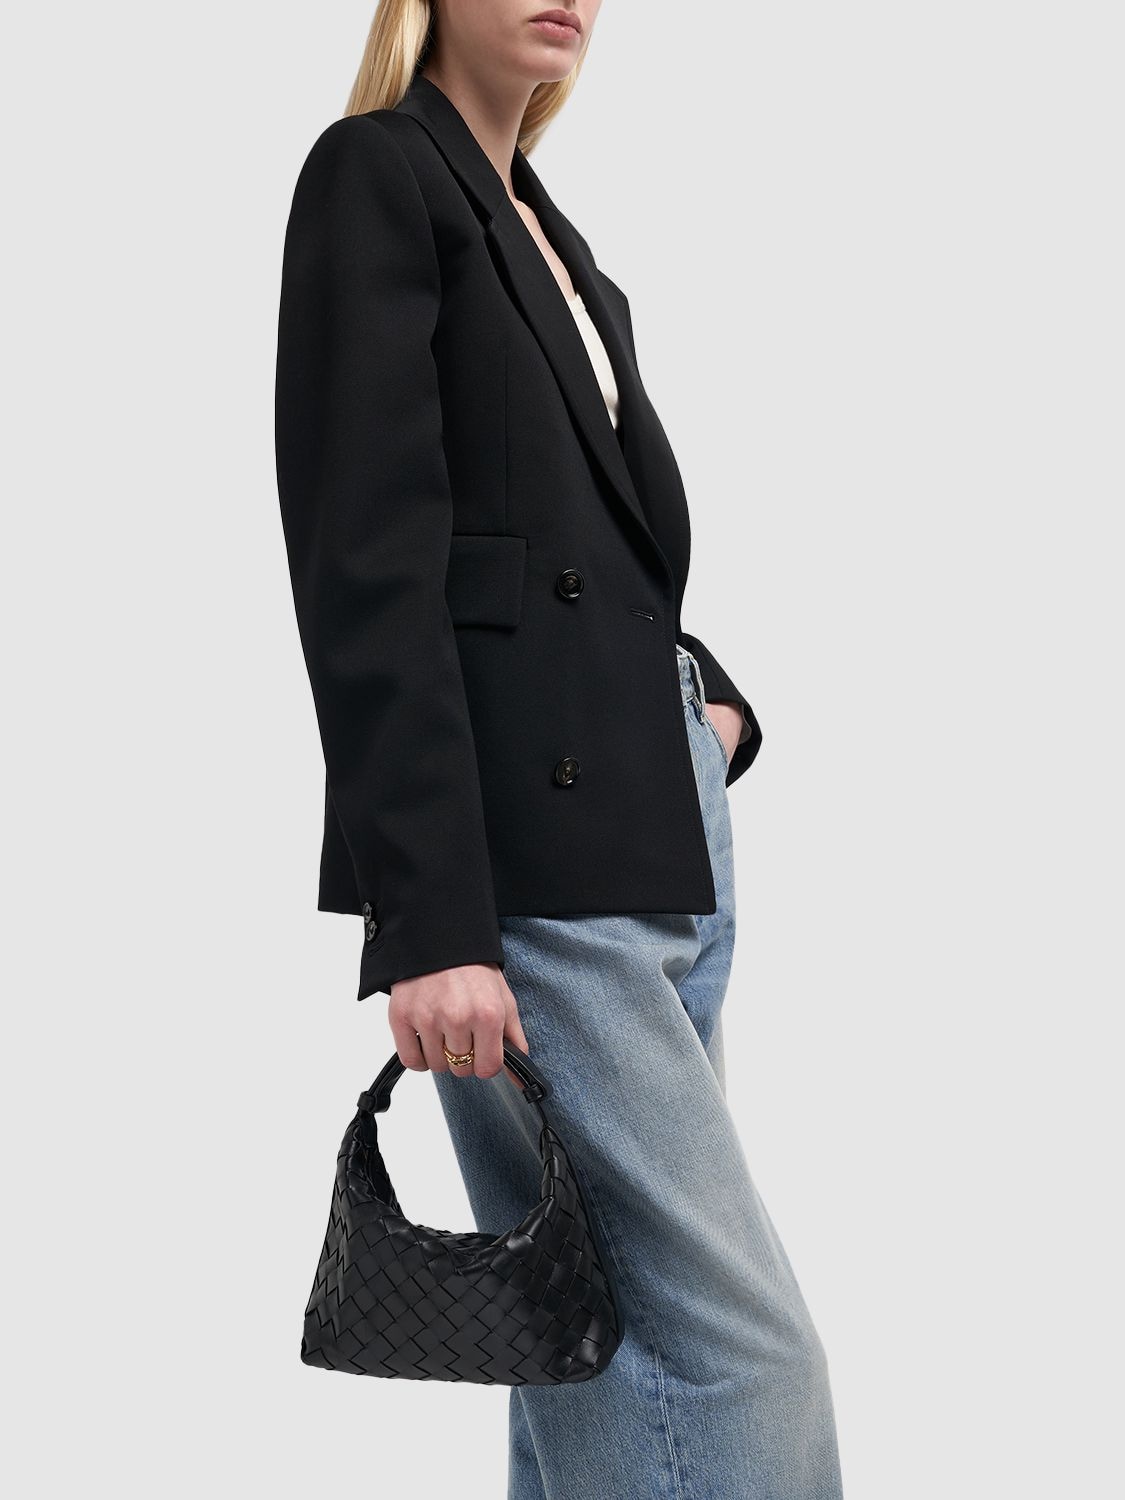 The Vendôme bag in PM & Mini sizes / Le sac Vendôme en tailles PM & Mini   Style and History intertwined: introducing the Vendôme bag in Mini and PM  (small) sizes.